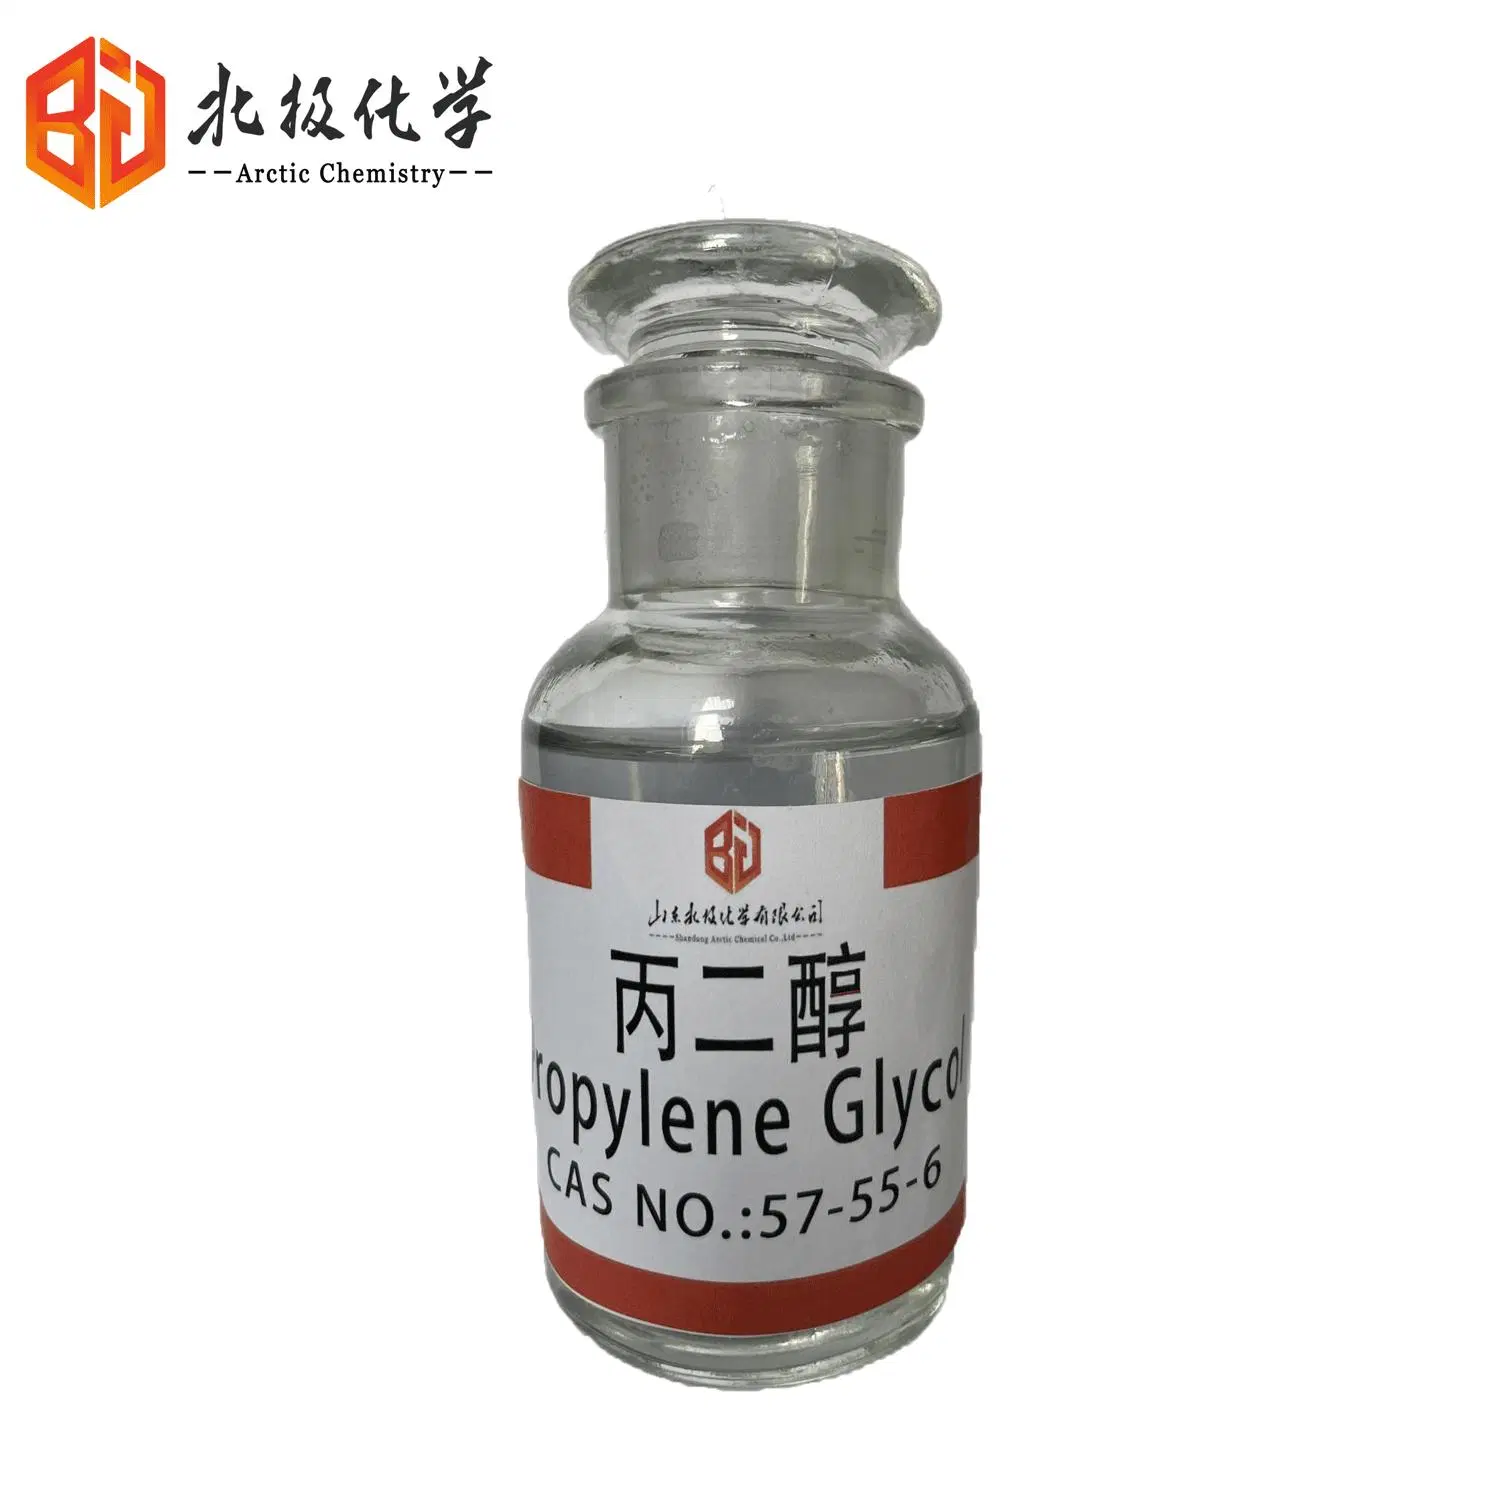 Industry Grade Propylene Glycol, CAS No. 57-55-6